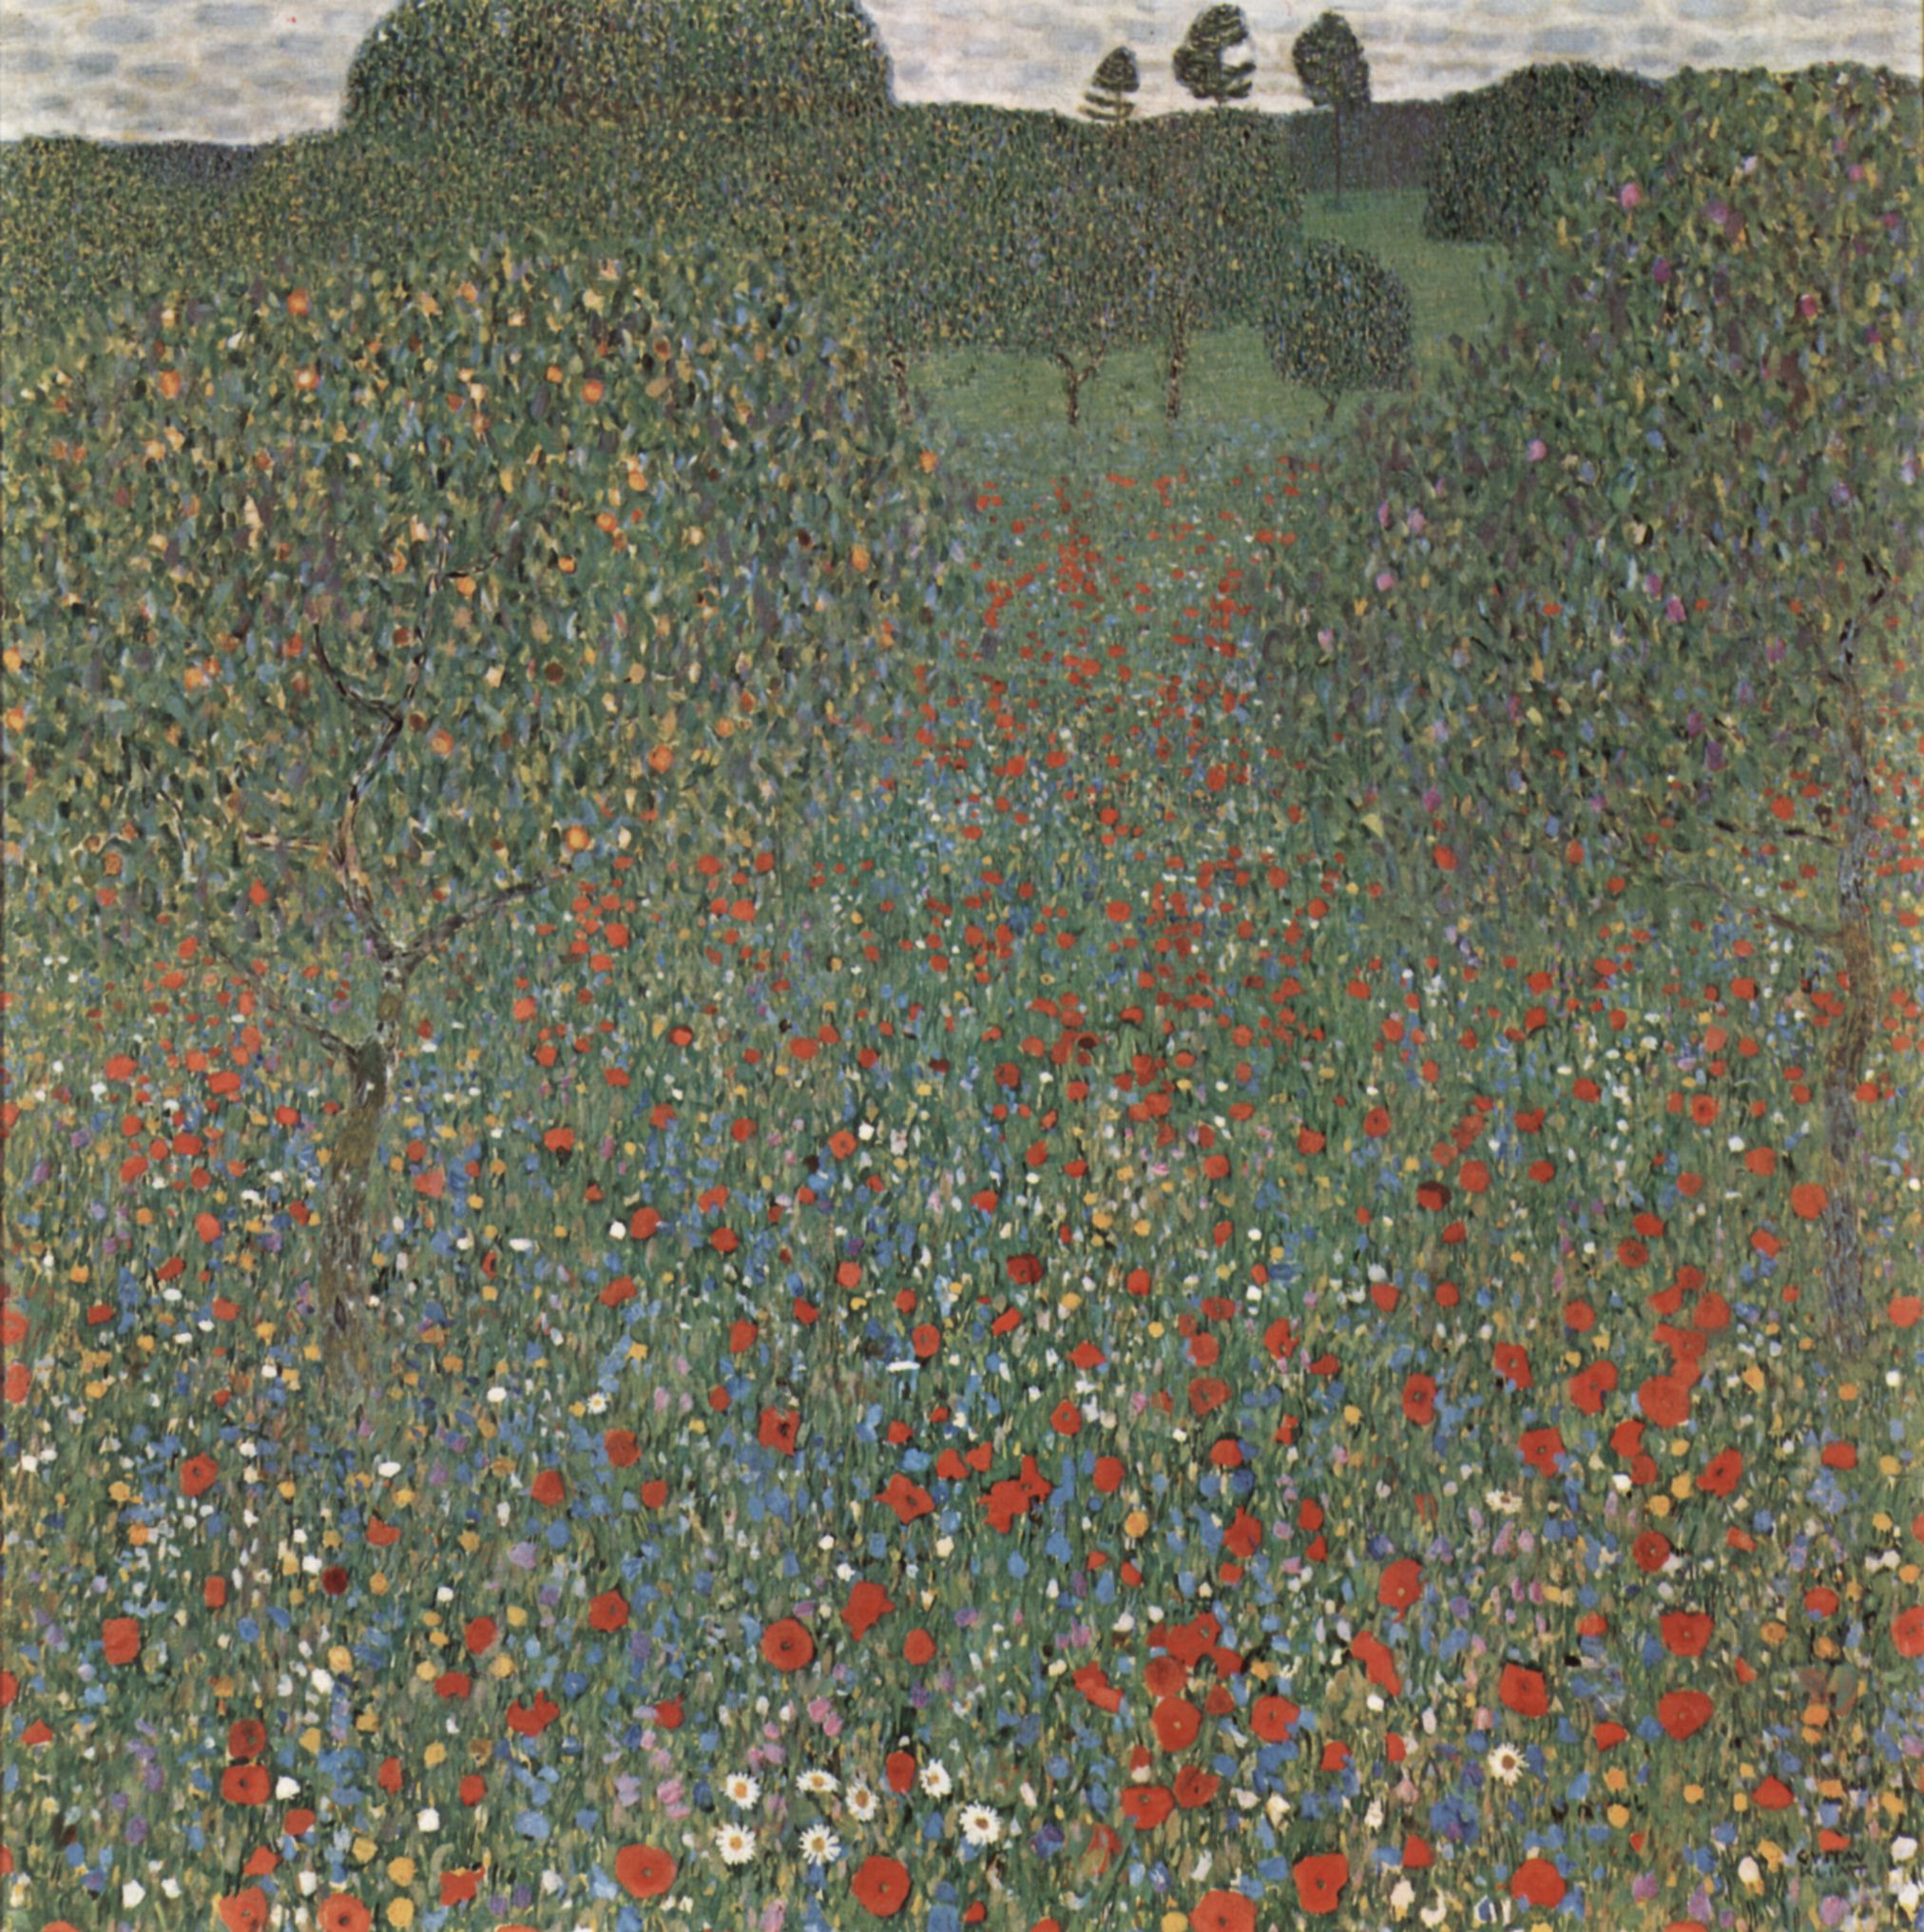 Poppy Field (1907).